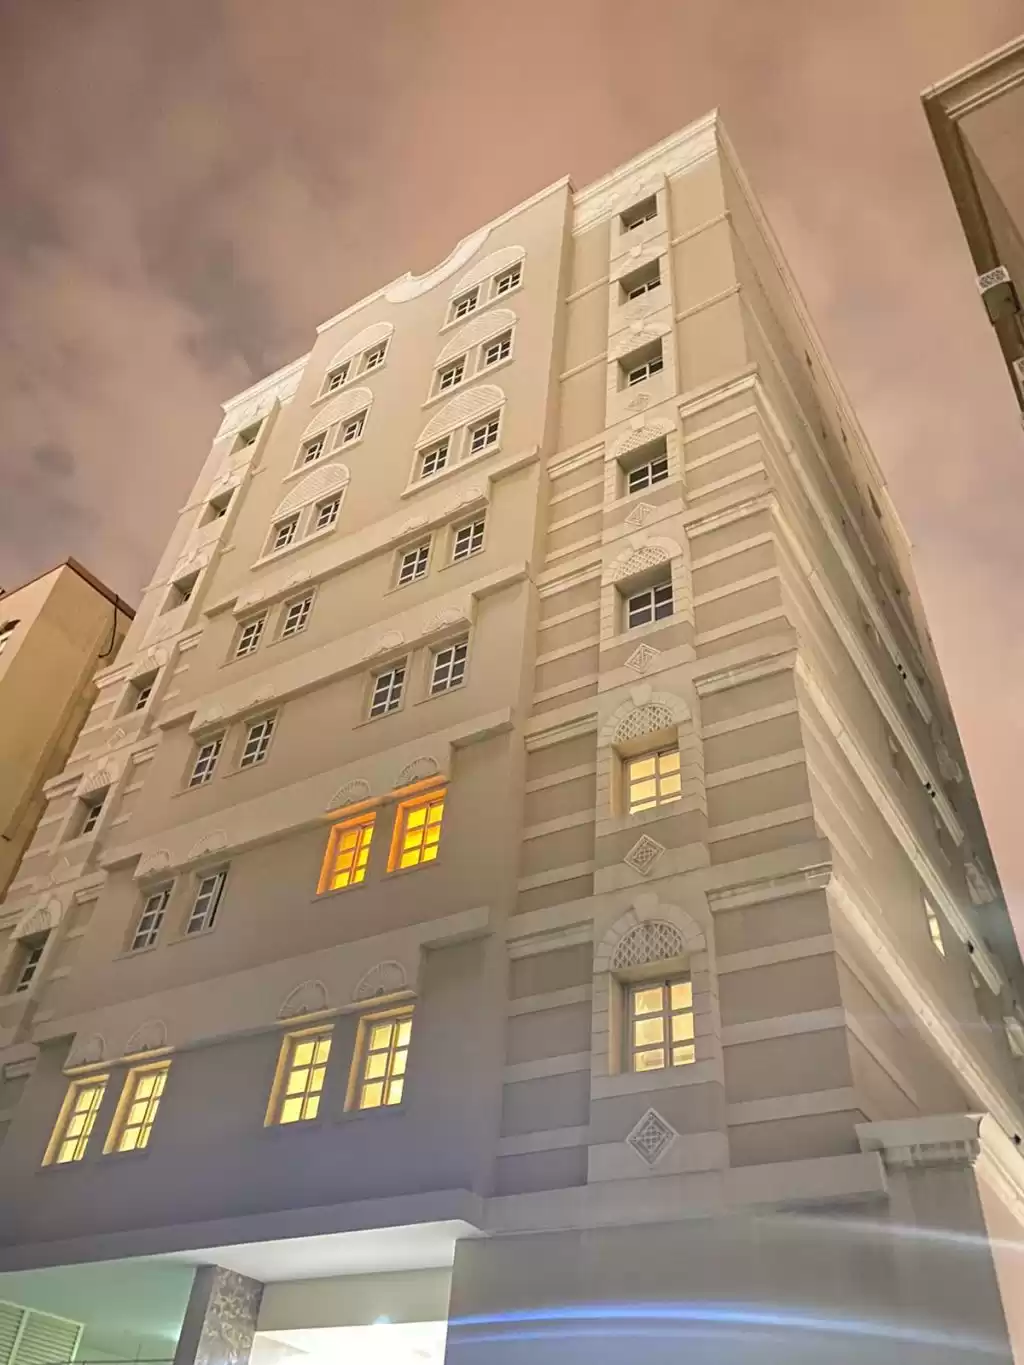 Résidentiel Propriété prête 3 chambres U / f Appartement  a louer au Al-Sadd , Doha #10540 - 1  image 